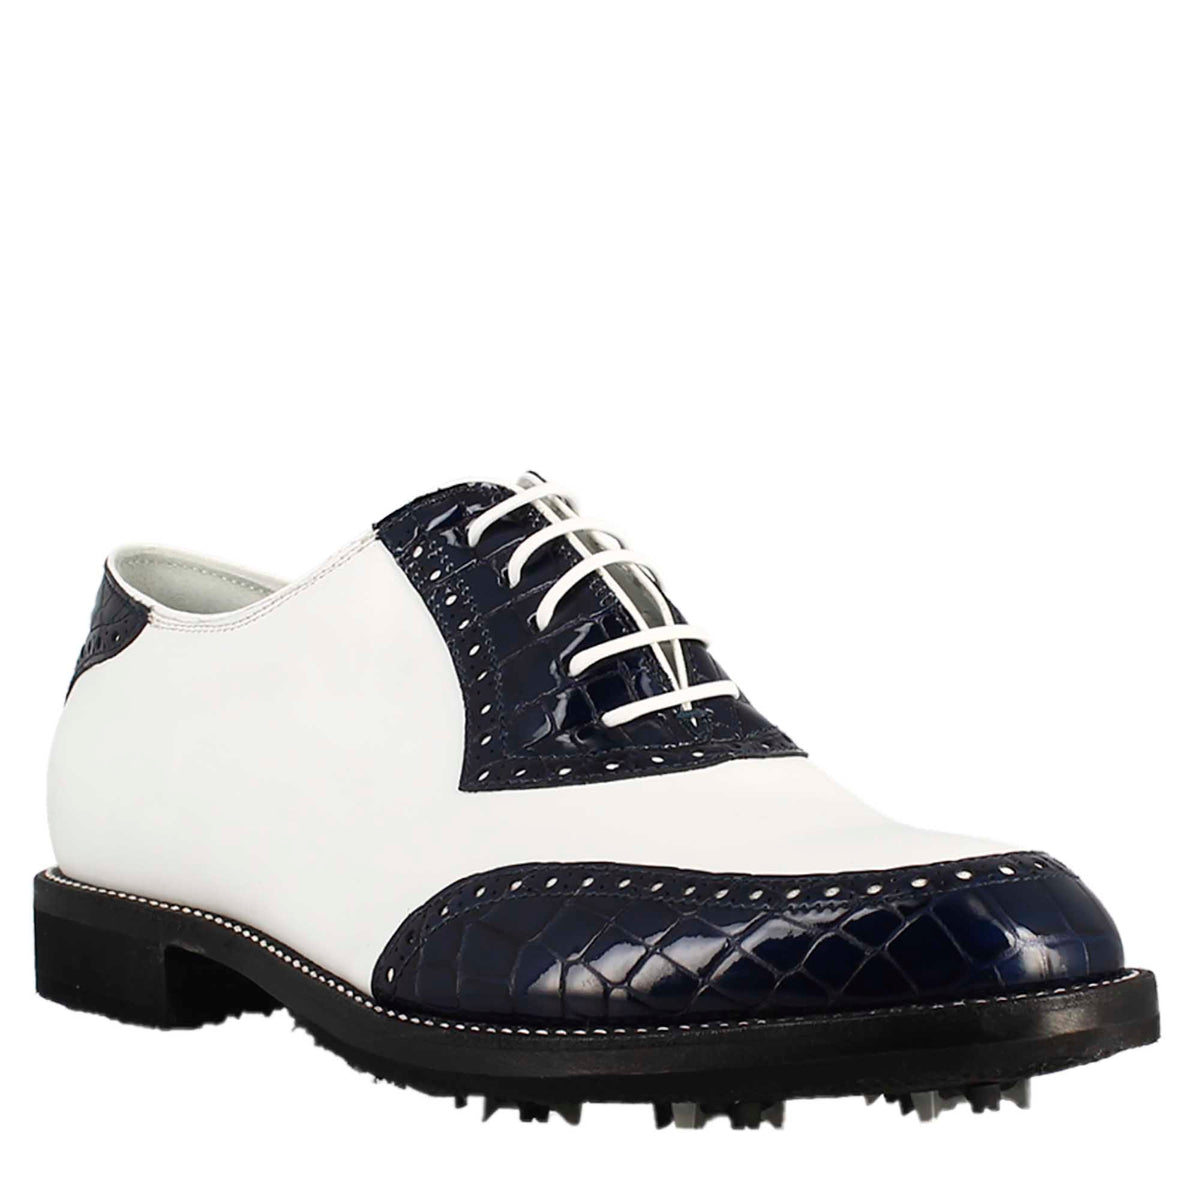 Chaussures de golf pour femmes fabriquées à la main en cuir blanc et noix de coco bleue